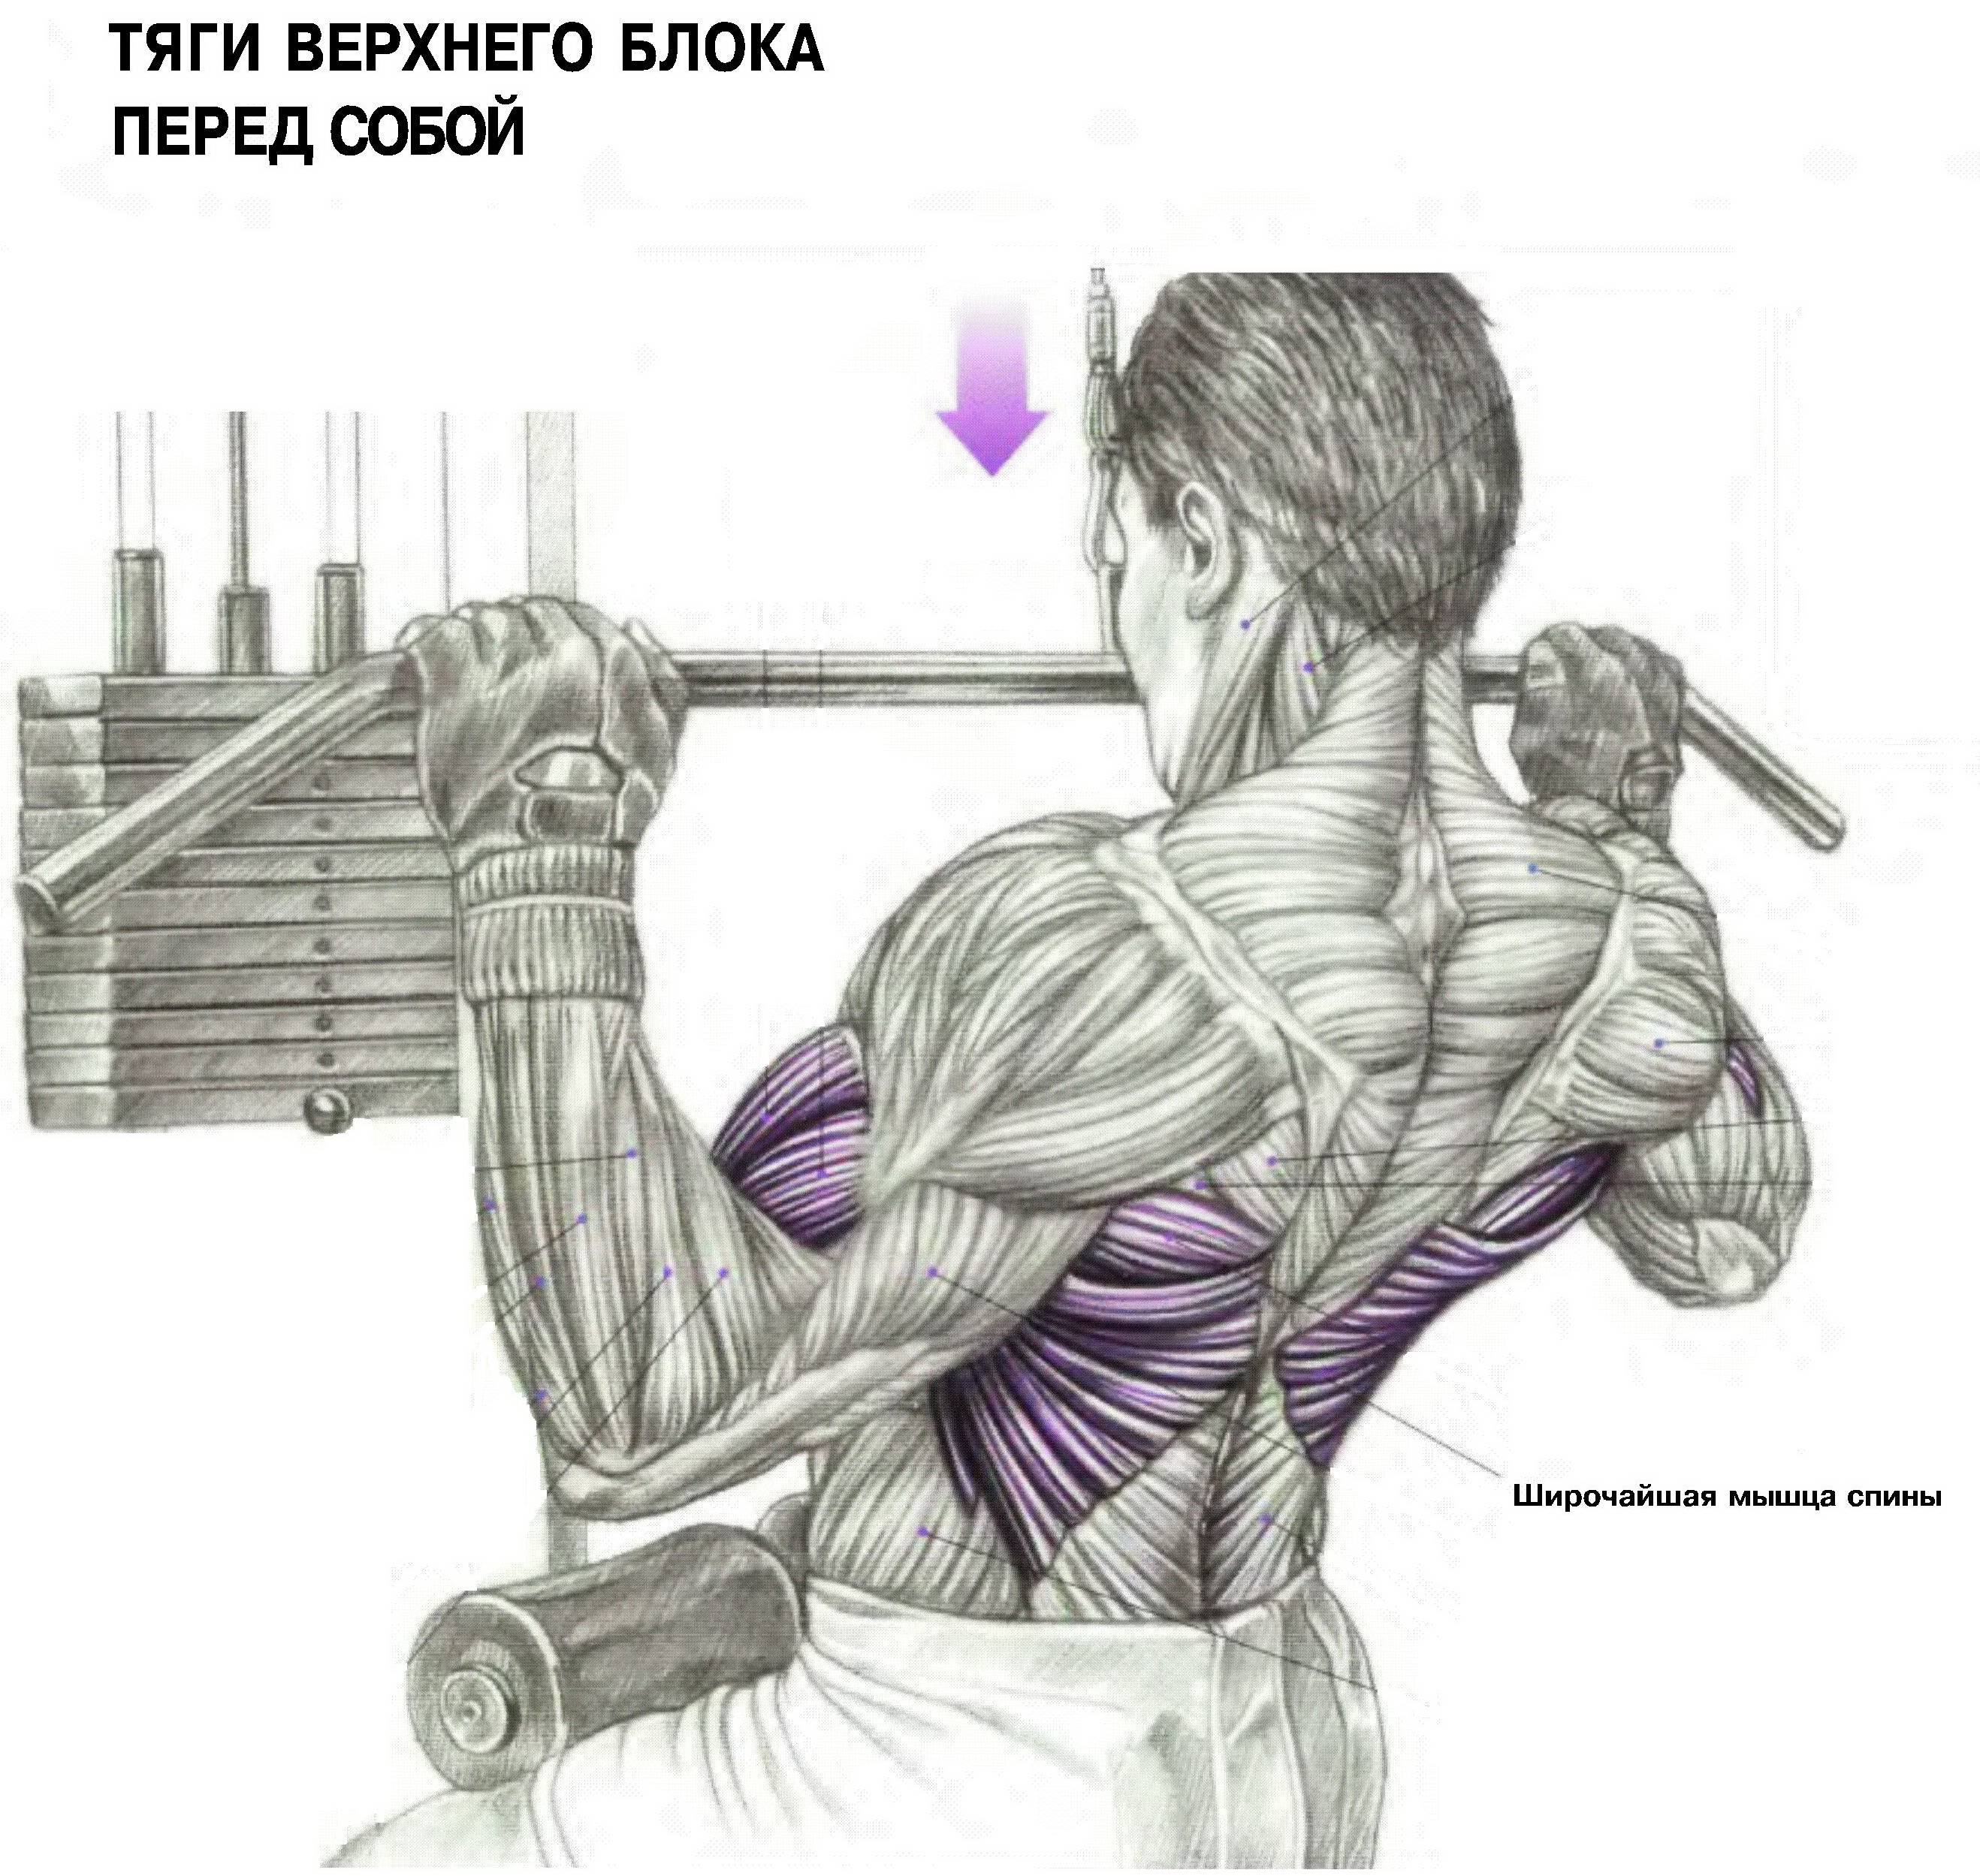 тренировка груди и спины для мужчин фото 74